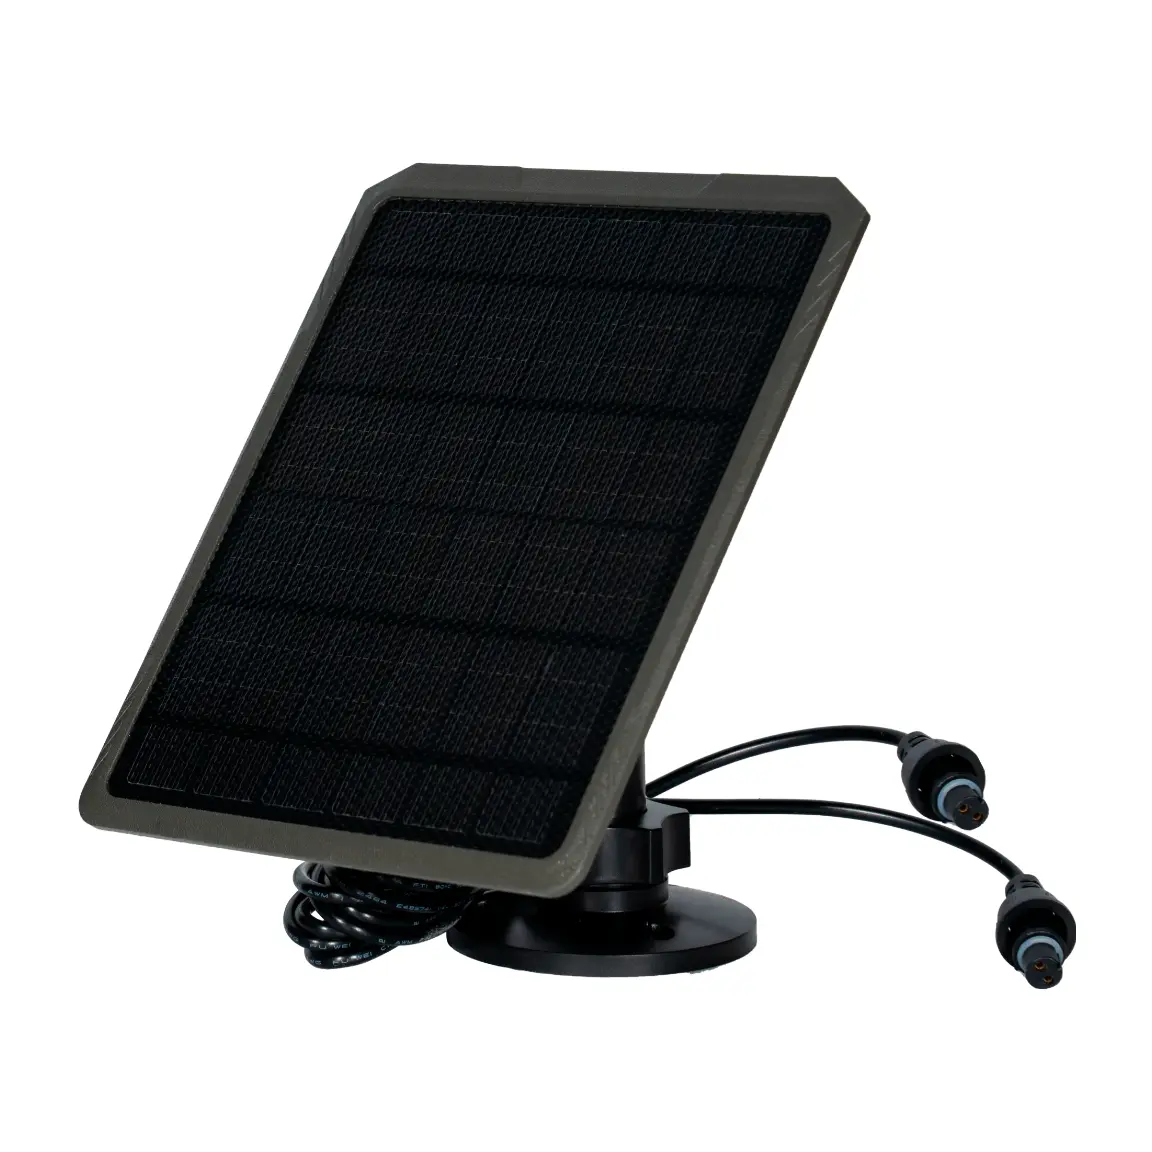 Placa solar GardePro SP350 con batería incorporada para GardePro A3S, A5 y X50